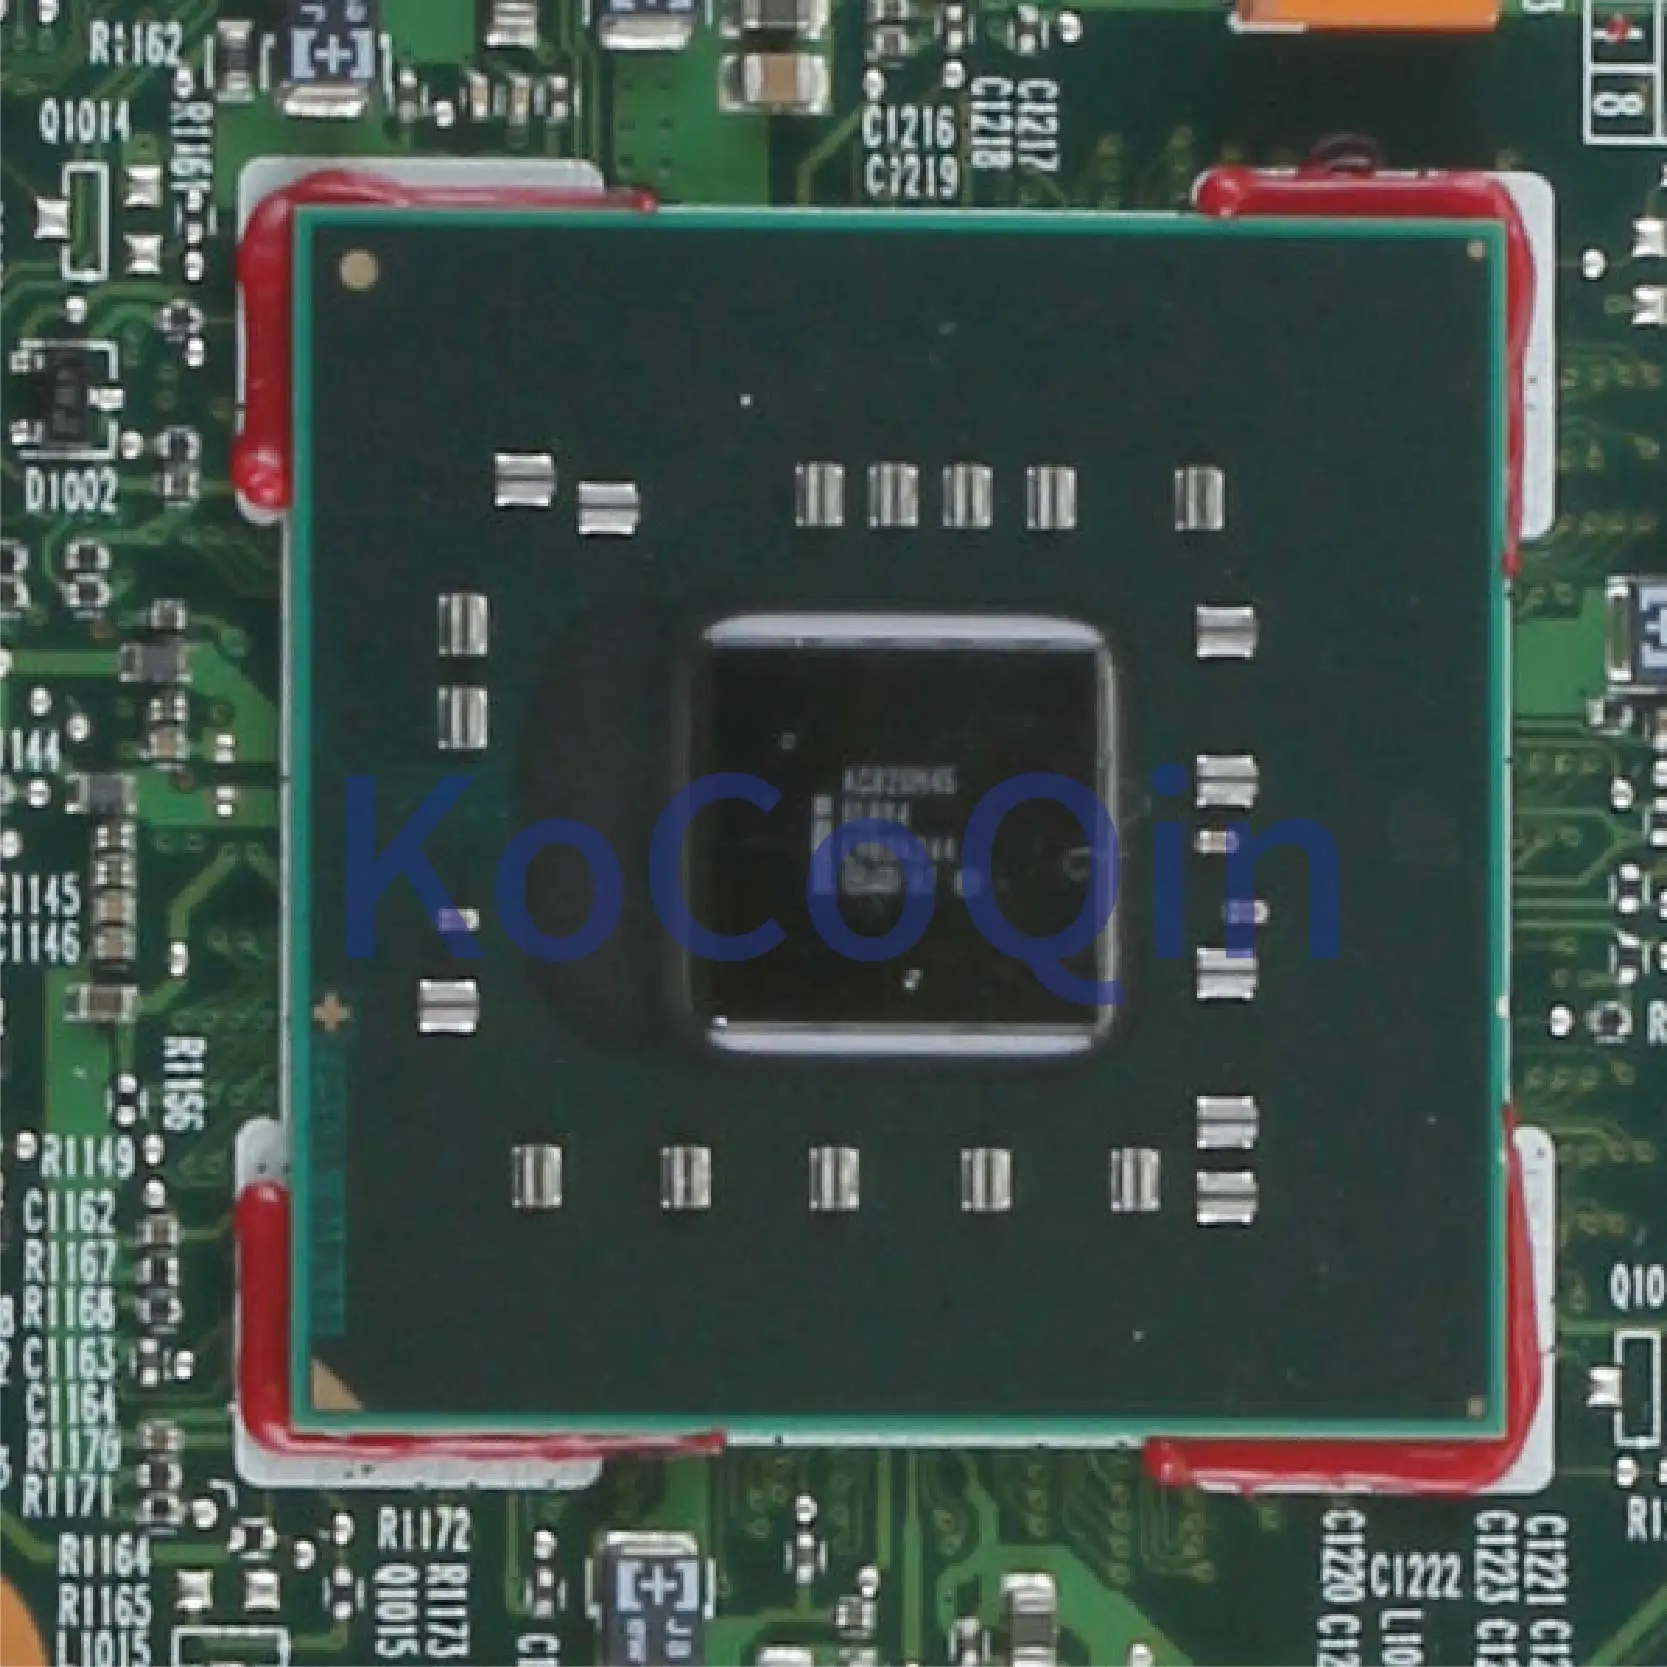 KoCoQin Laptop placa de baza Pentru HP Comaq 6530S 6730S Placa de baza 501354-001 501354-501 6050A2161001-MB-A04 GM45